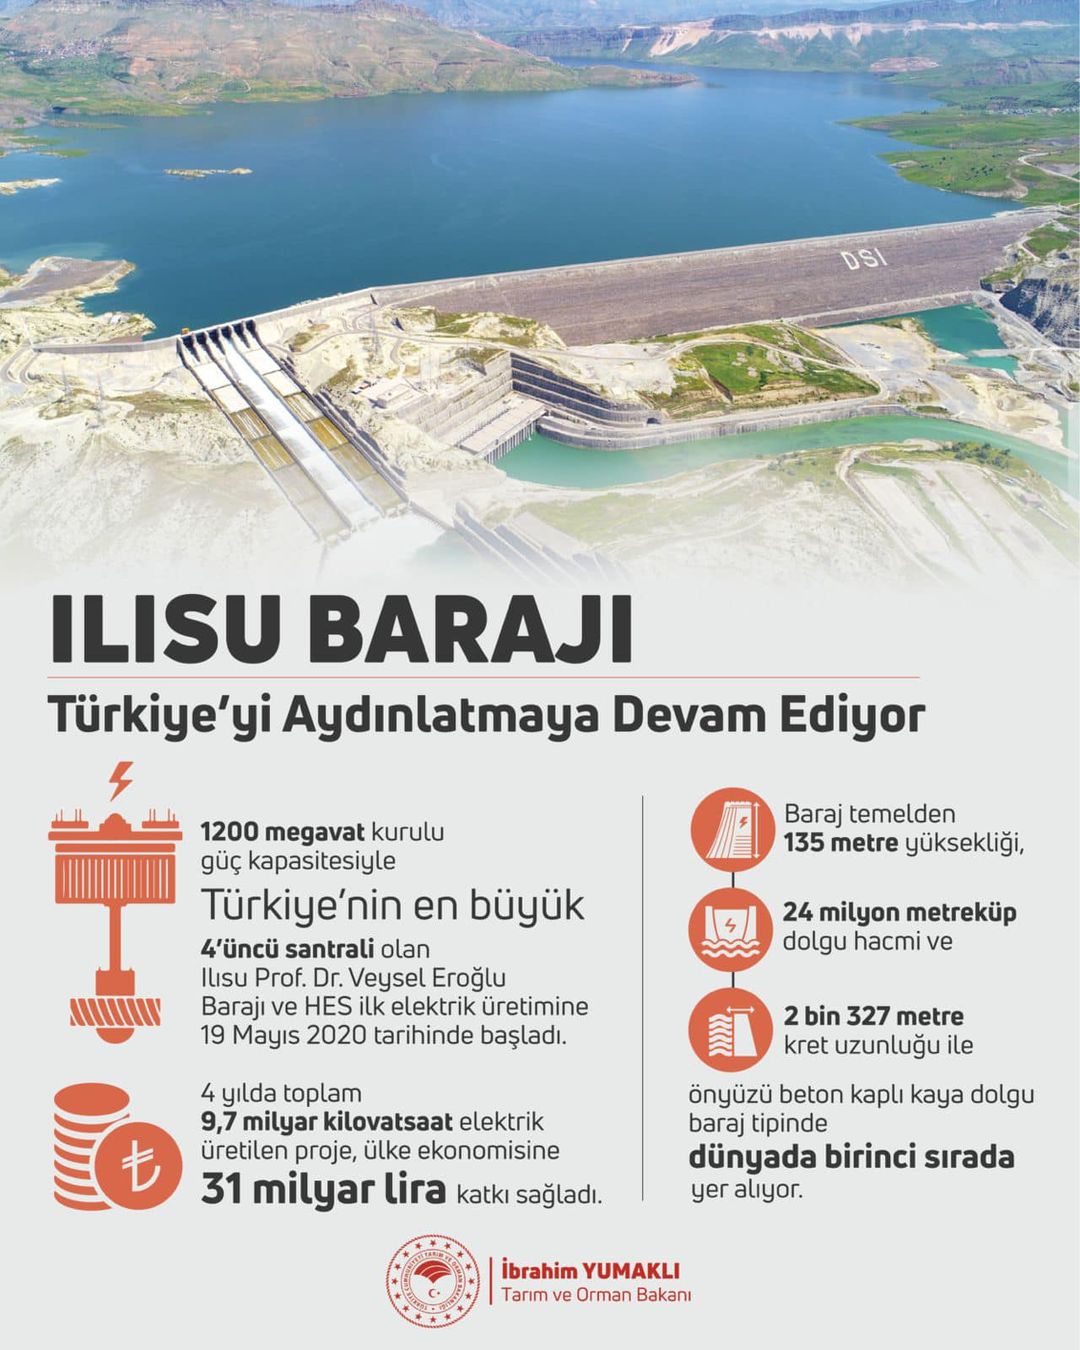 Tarım ve Orman Bakanı İbrahim Yumaklı, Ilısu Barajı'nın Türkiye'nin ekonomisine sağladığı katkıları değerlendirdi